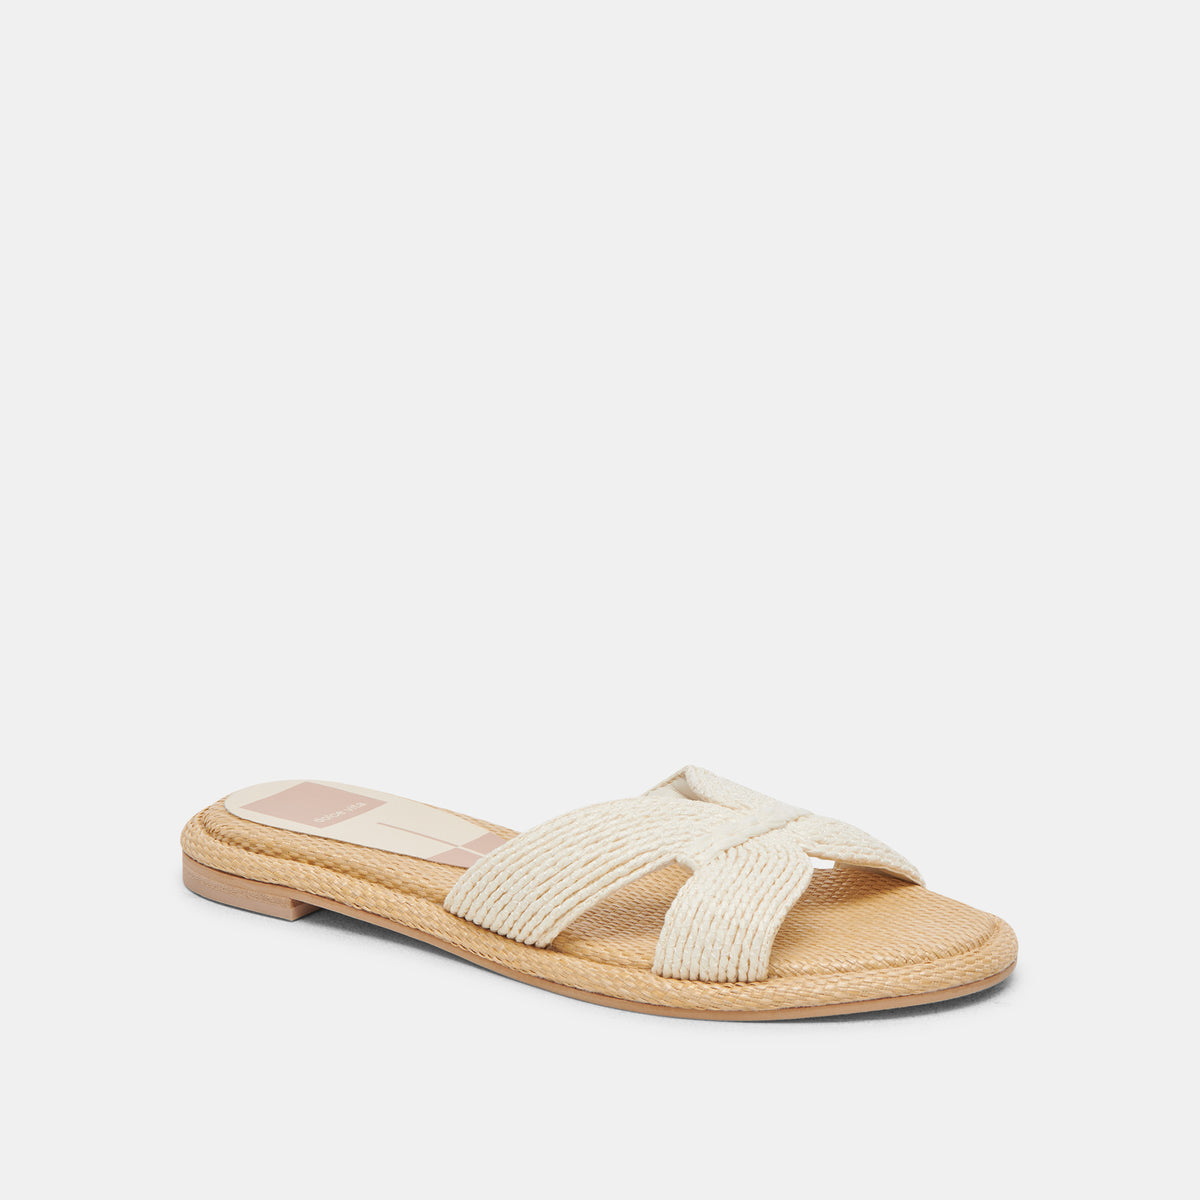 ATOMIC Sandals White Raffia | Women's White Raffia Sandals – Dolce Vita